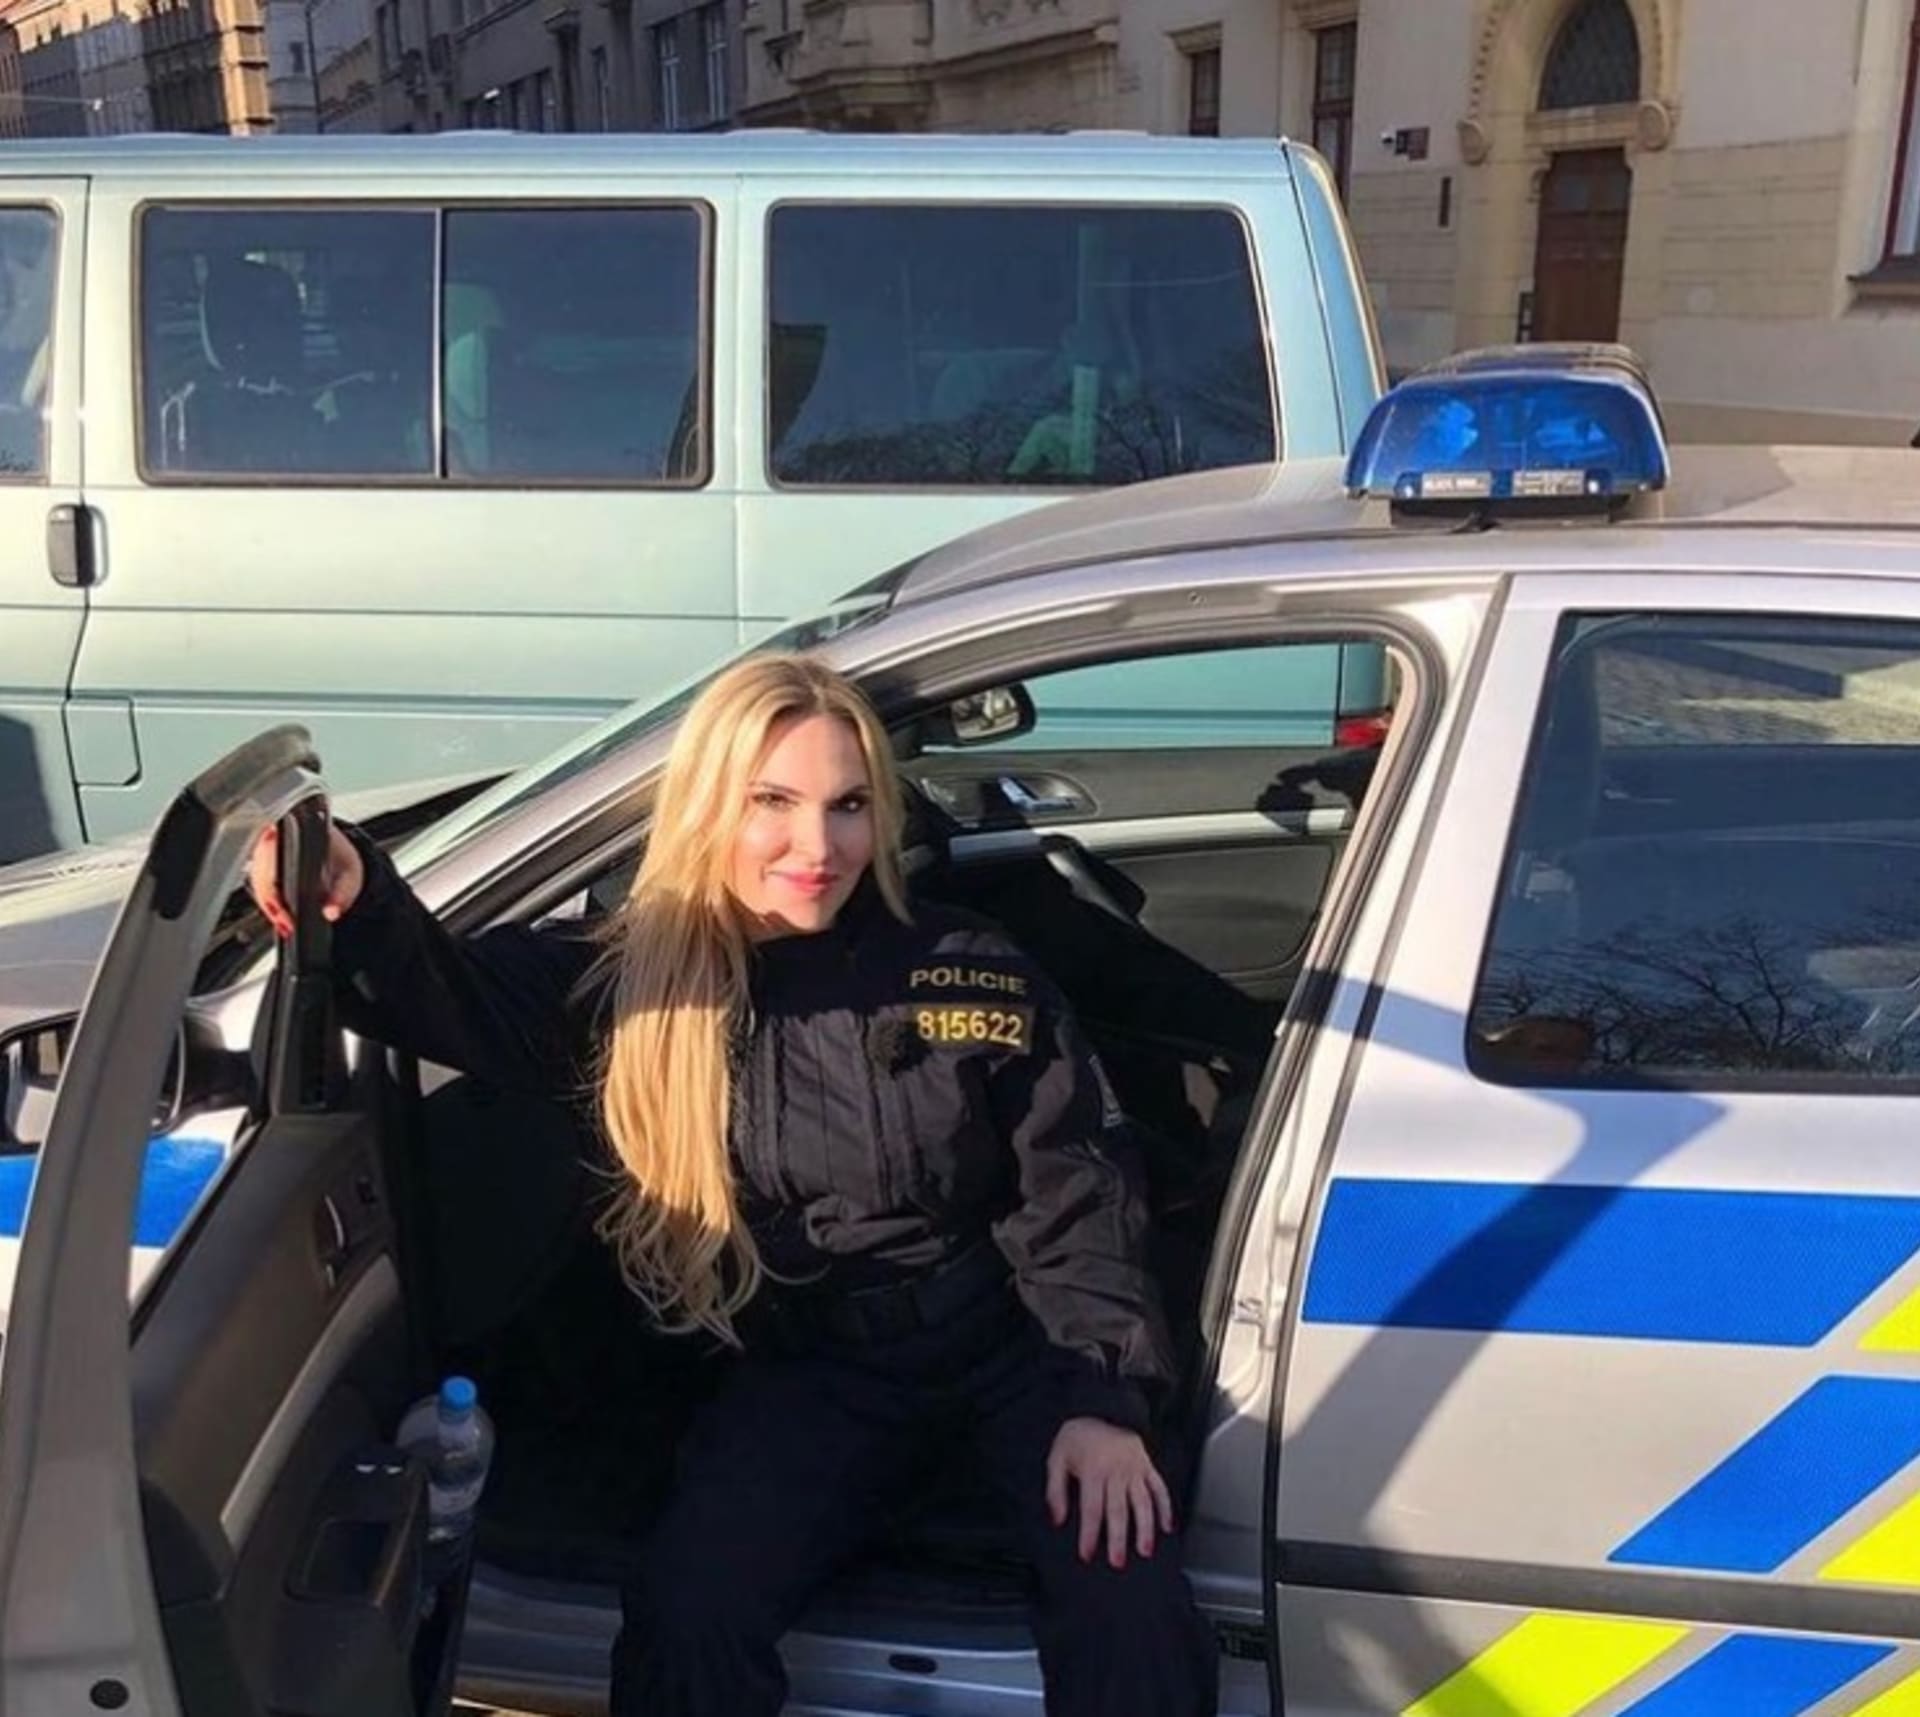 Další policistkou, která se objevuje v Policii v akci, je Kamila Lůbalová.